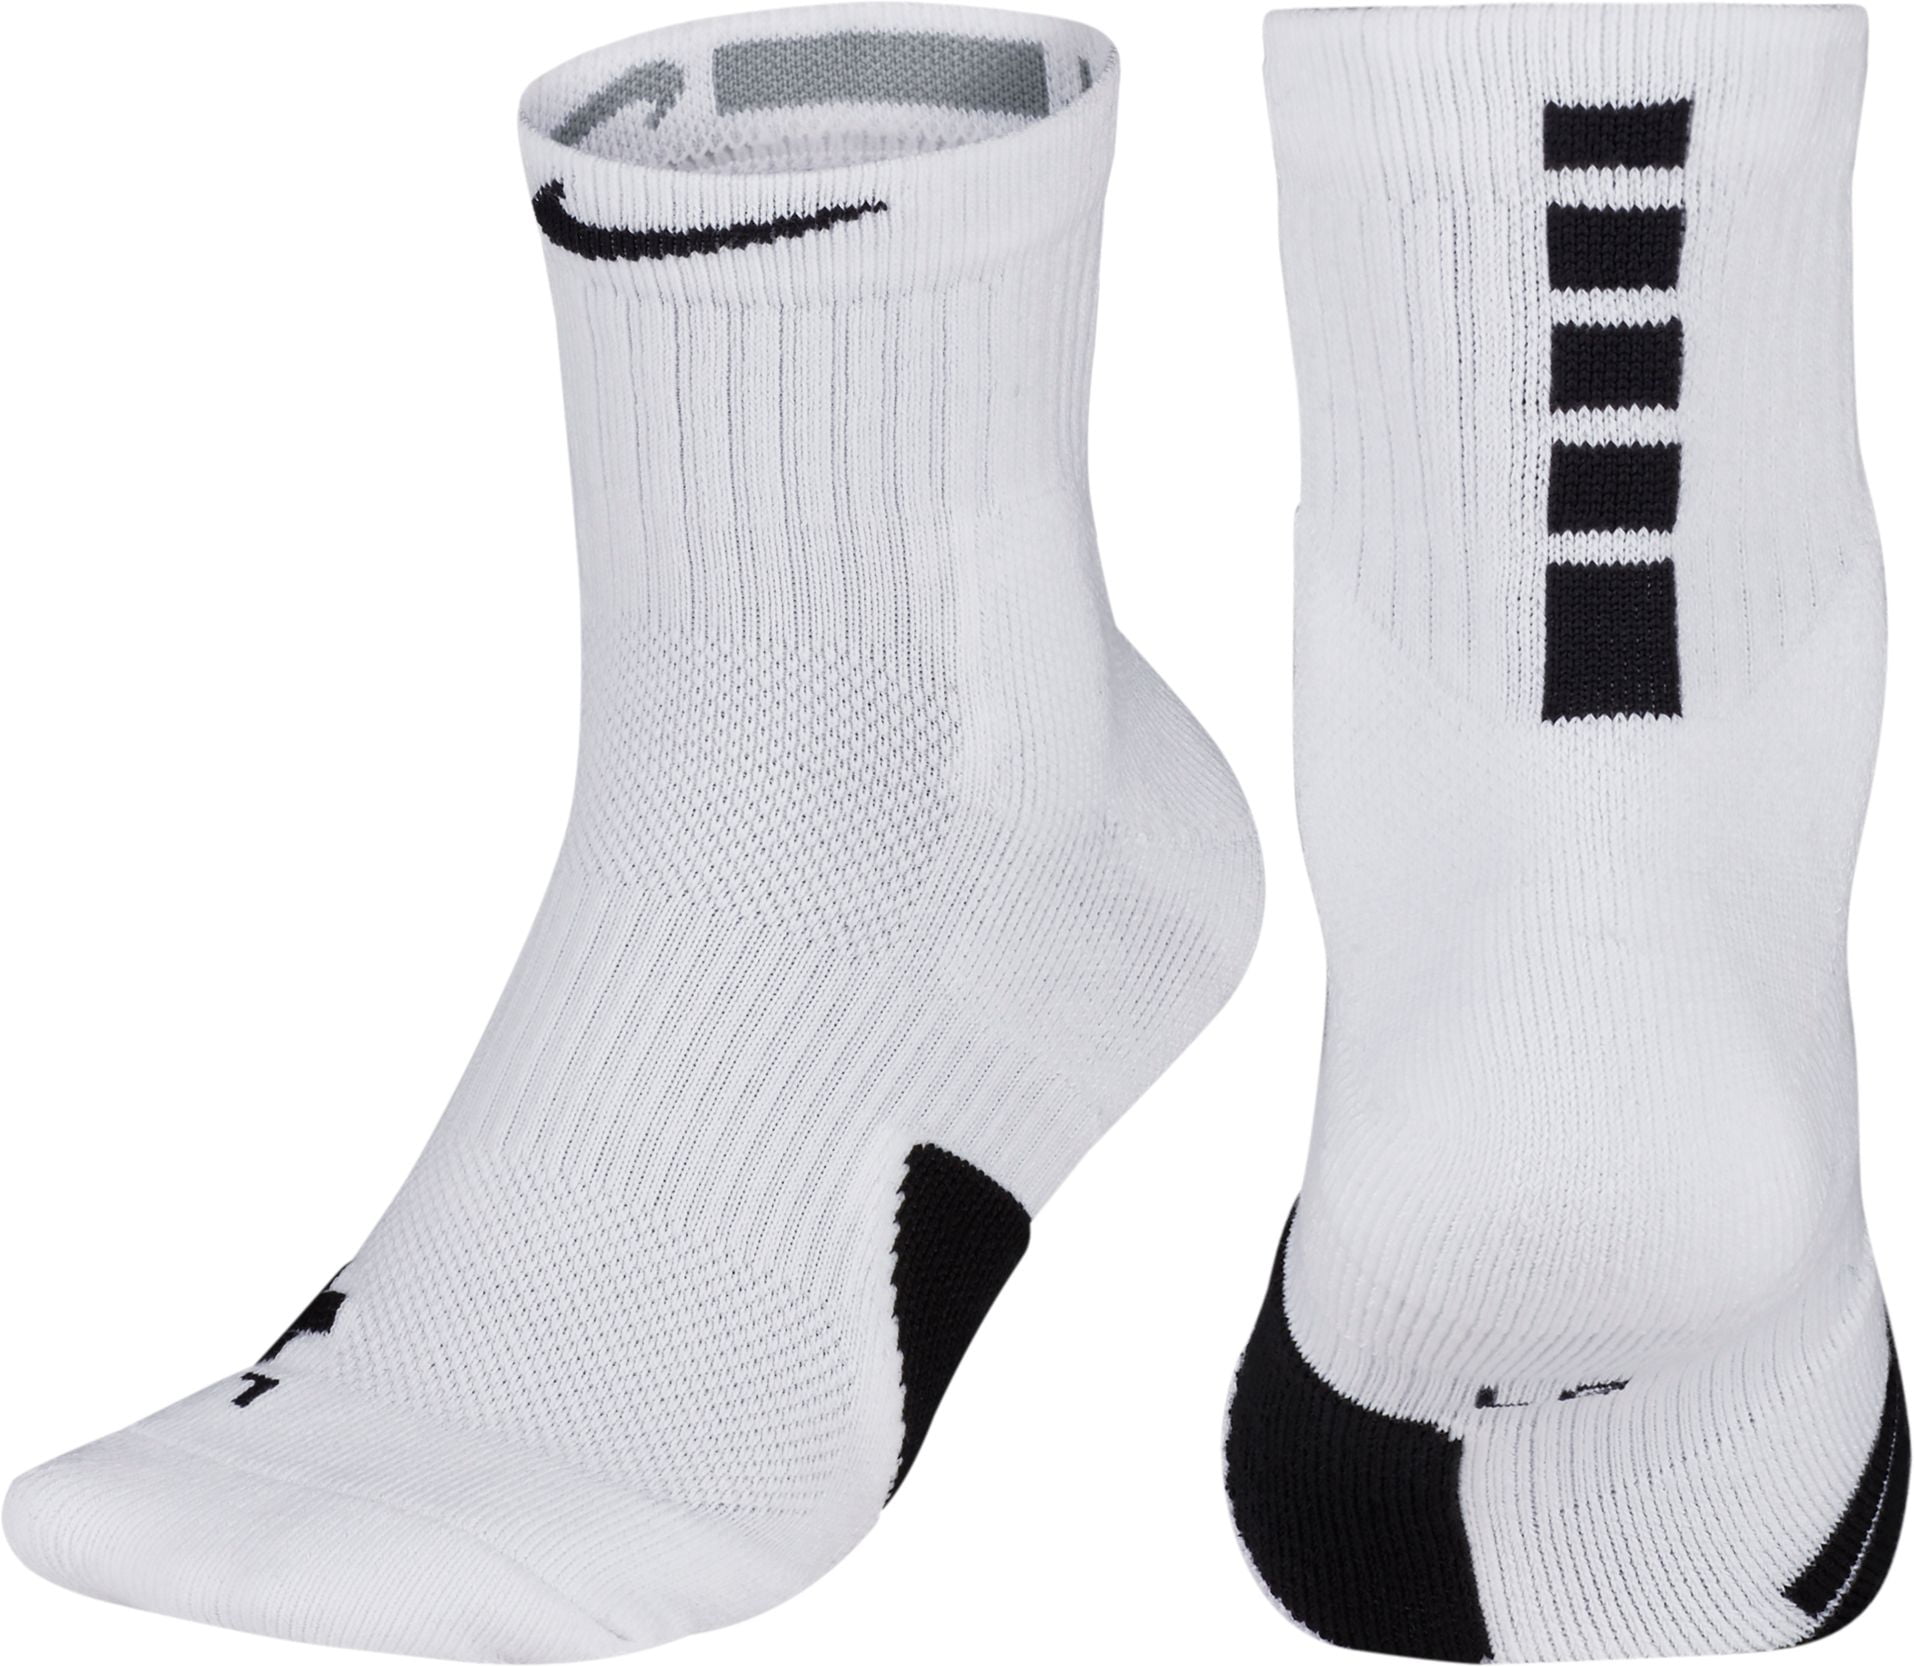 elite mid socks